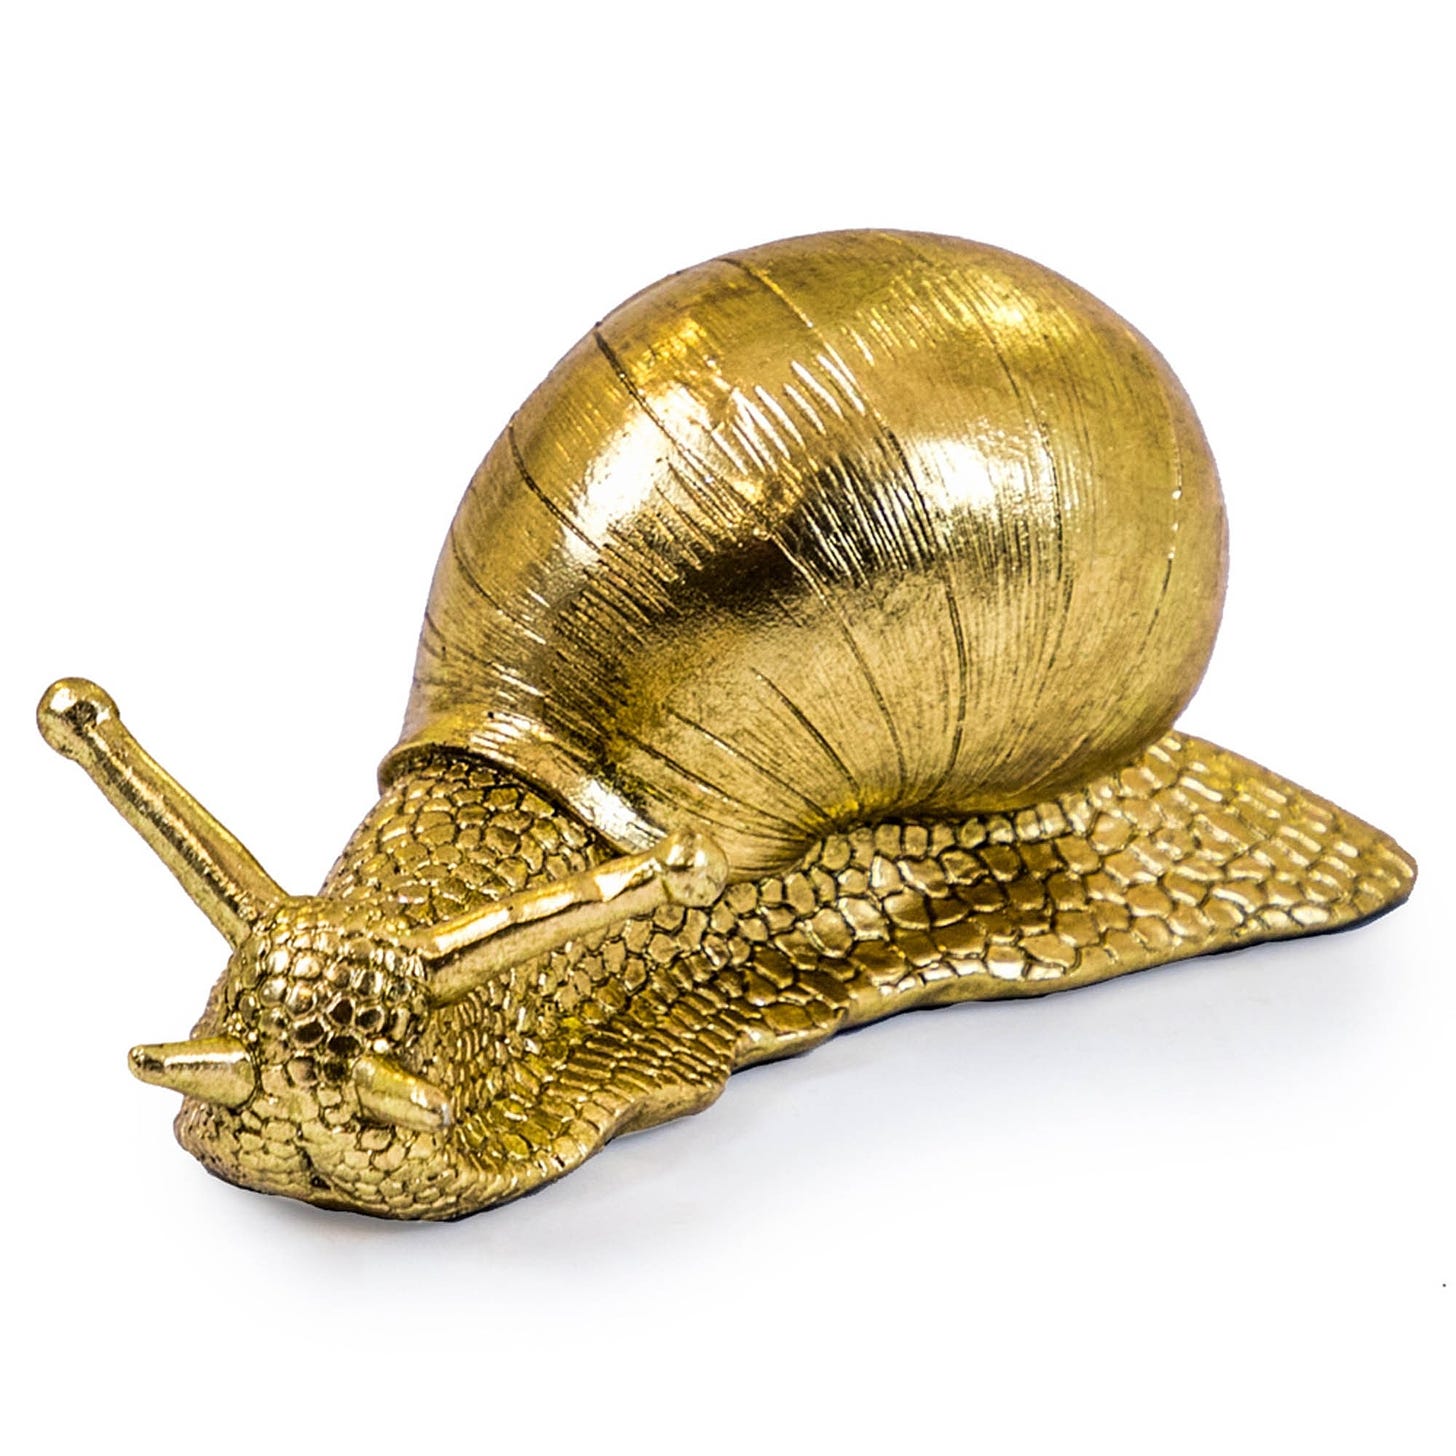 Gold Snail Figure | Snail Figure | Ornament | Home Decor